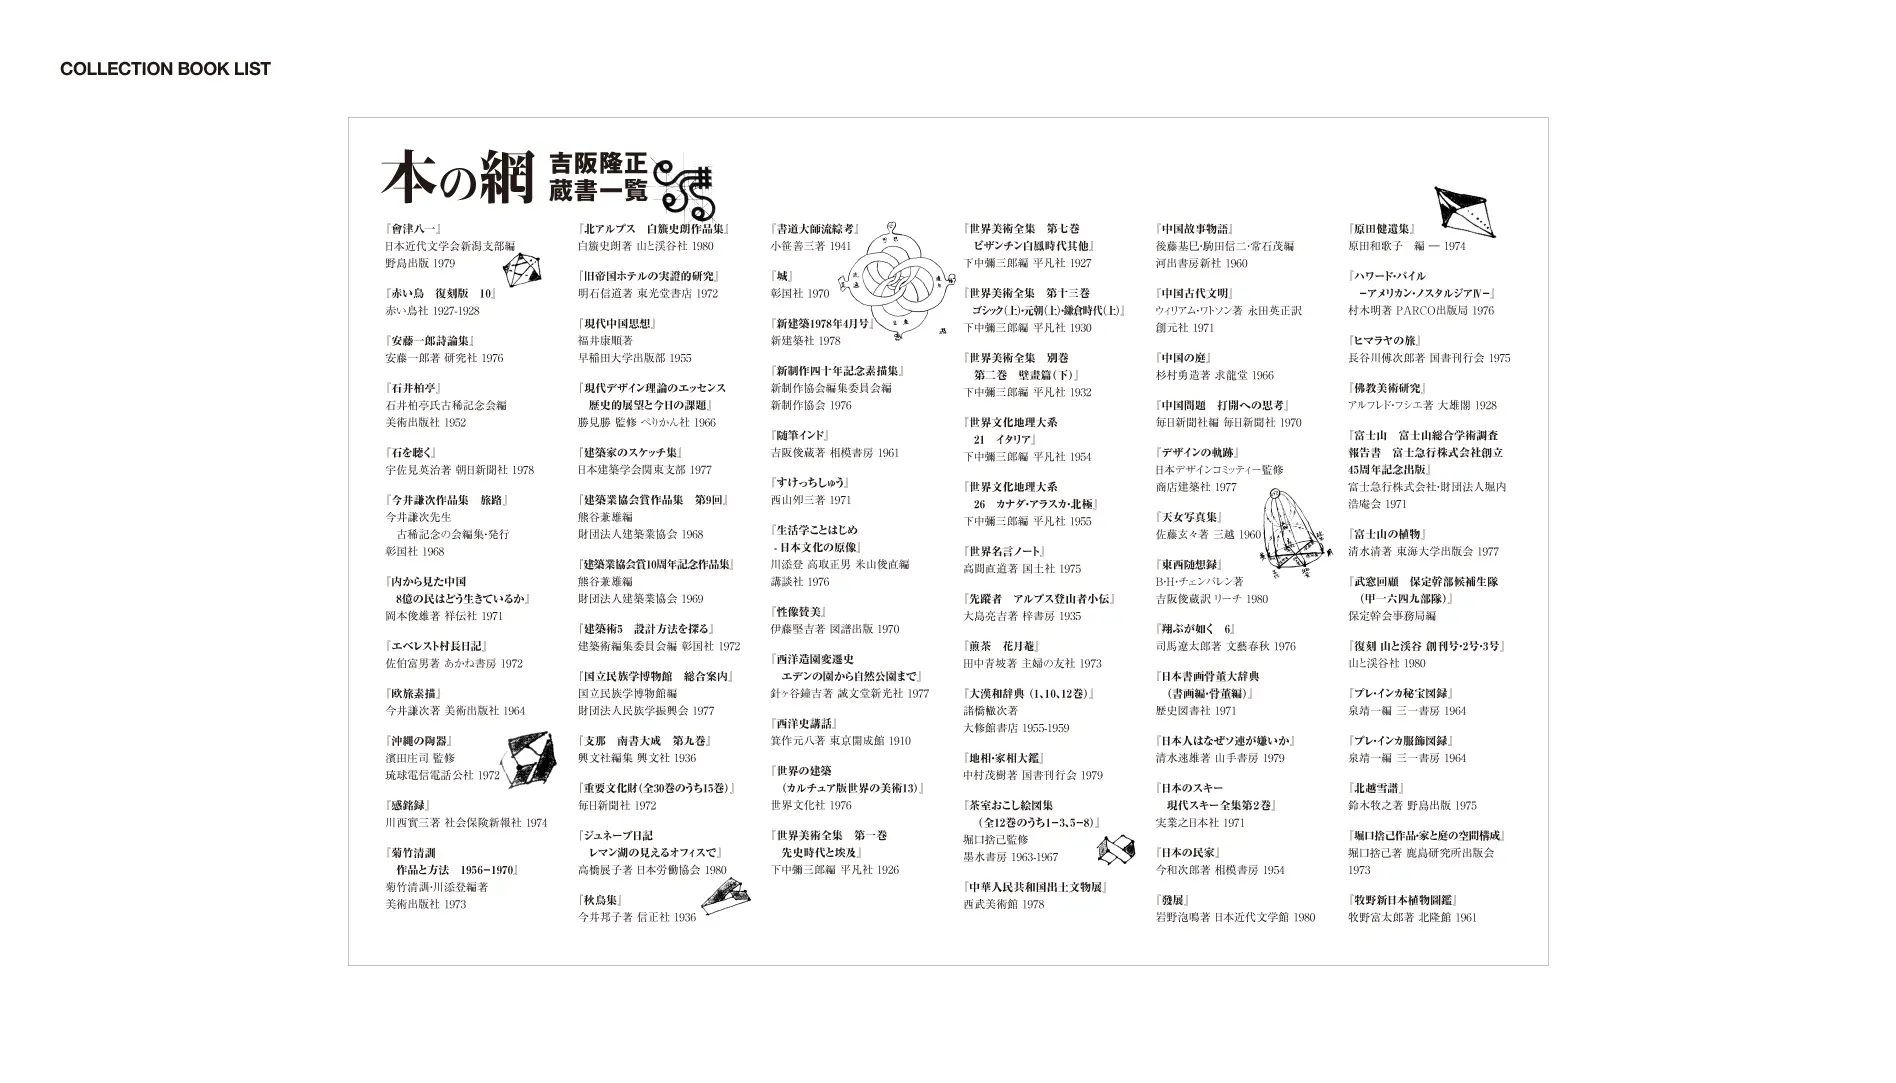 企画展『本の網 吉阪隆正蔵書公開』ビジュアルデザイン